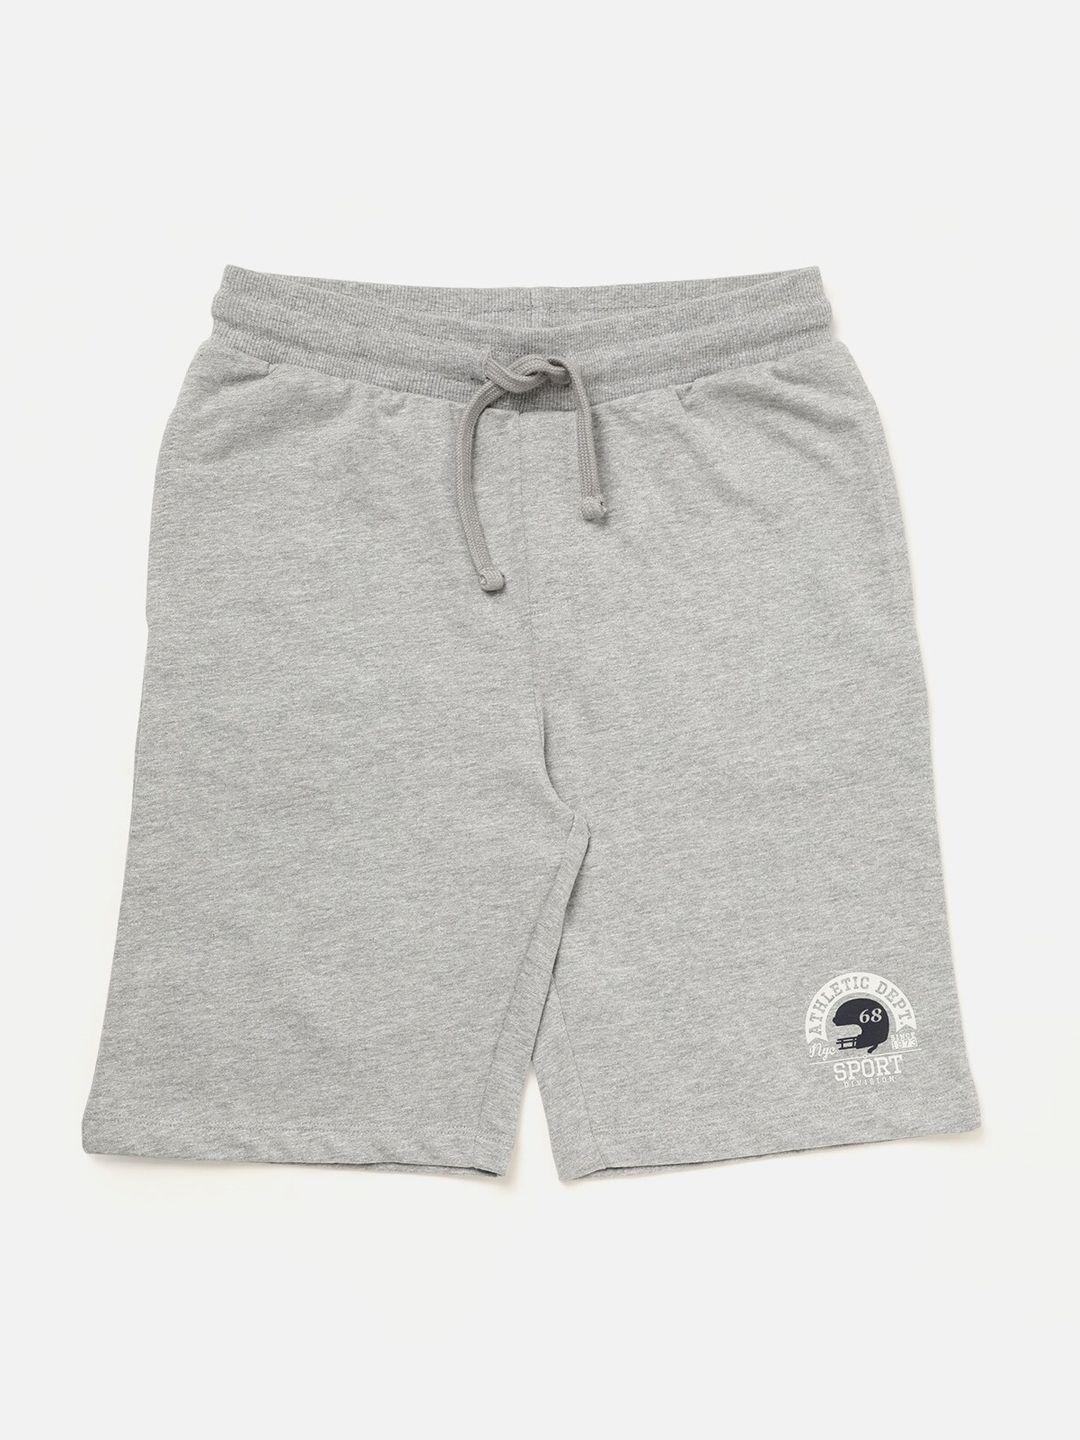 r&b boys grey shorts